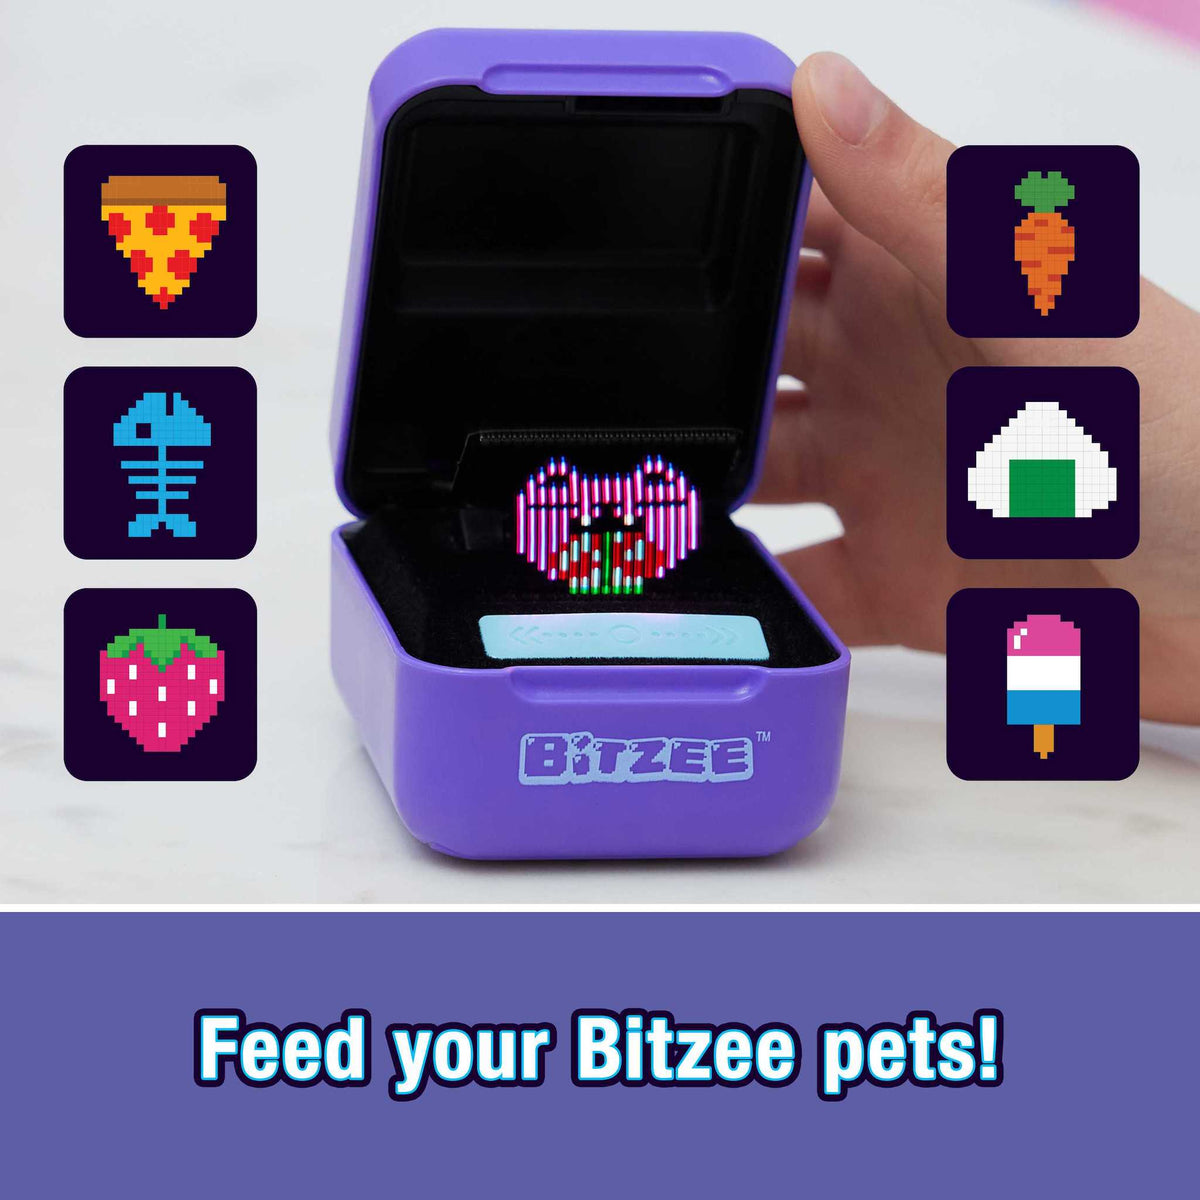 Bitzee Interactive Toy Digital Pet - Nantucket Kids